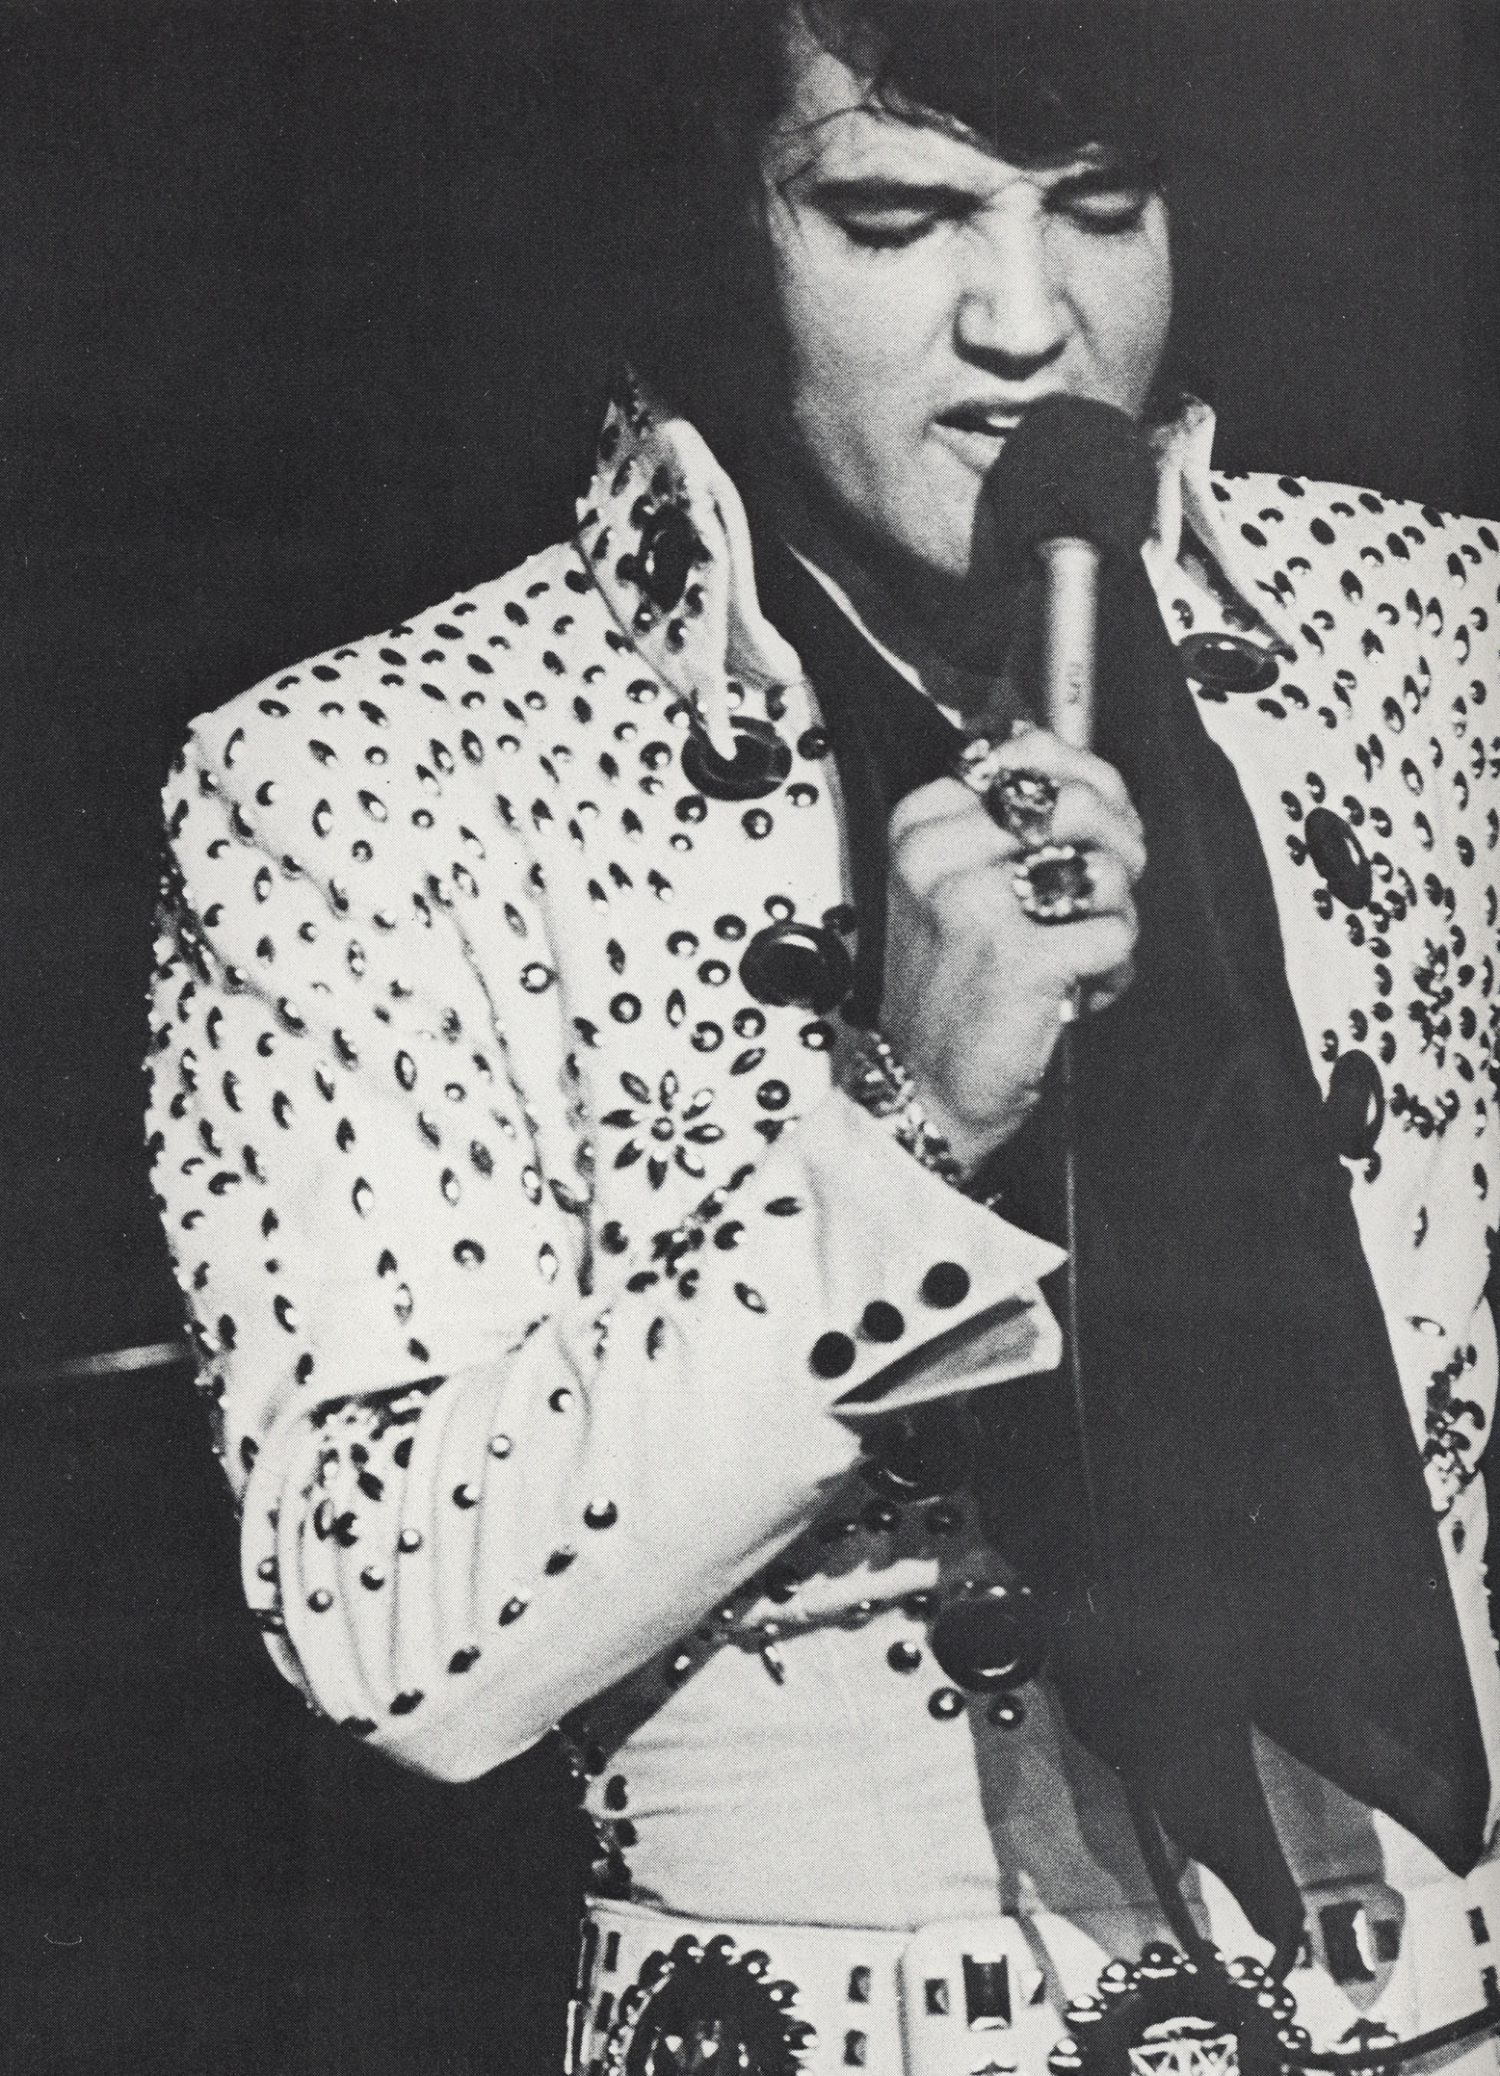 Elvis Presley in his rhinestone Nudie suit